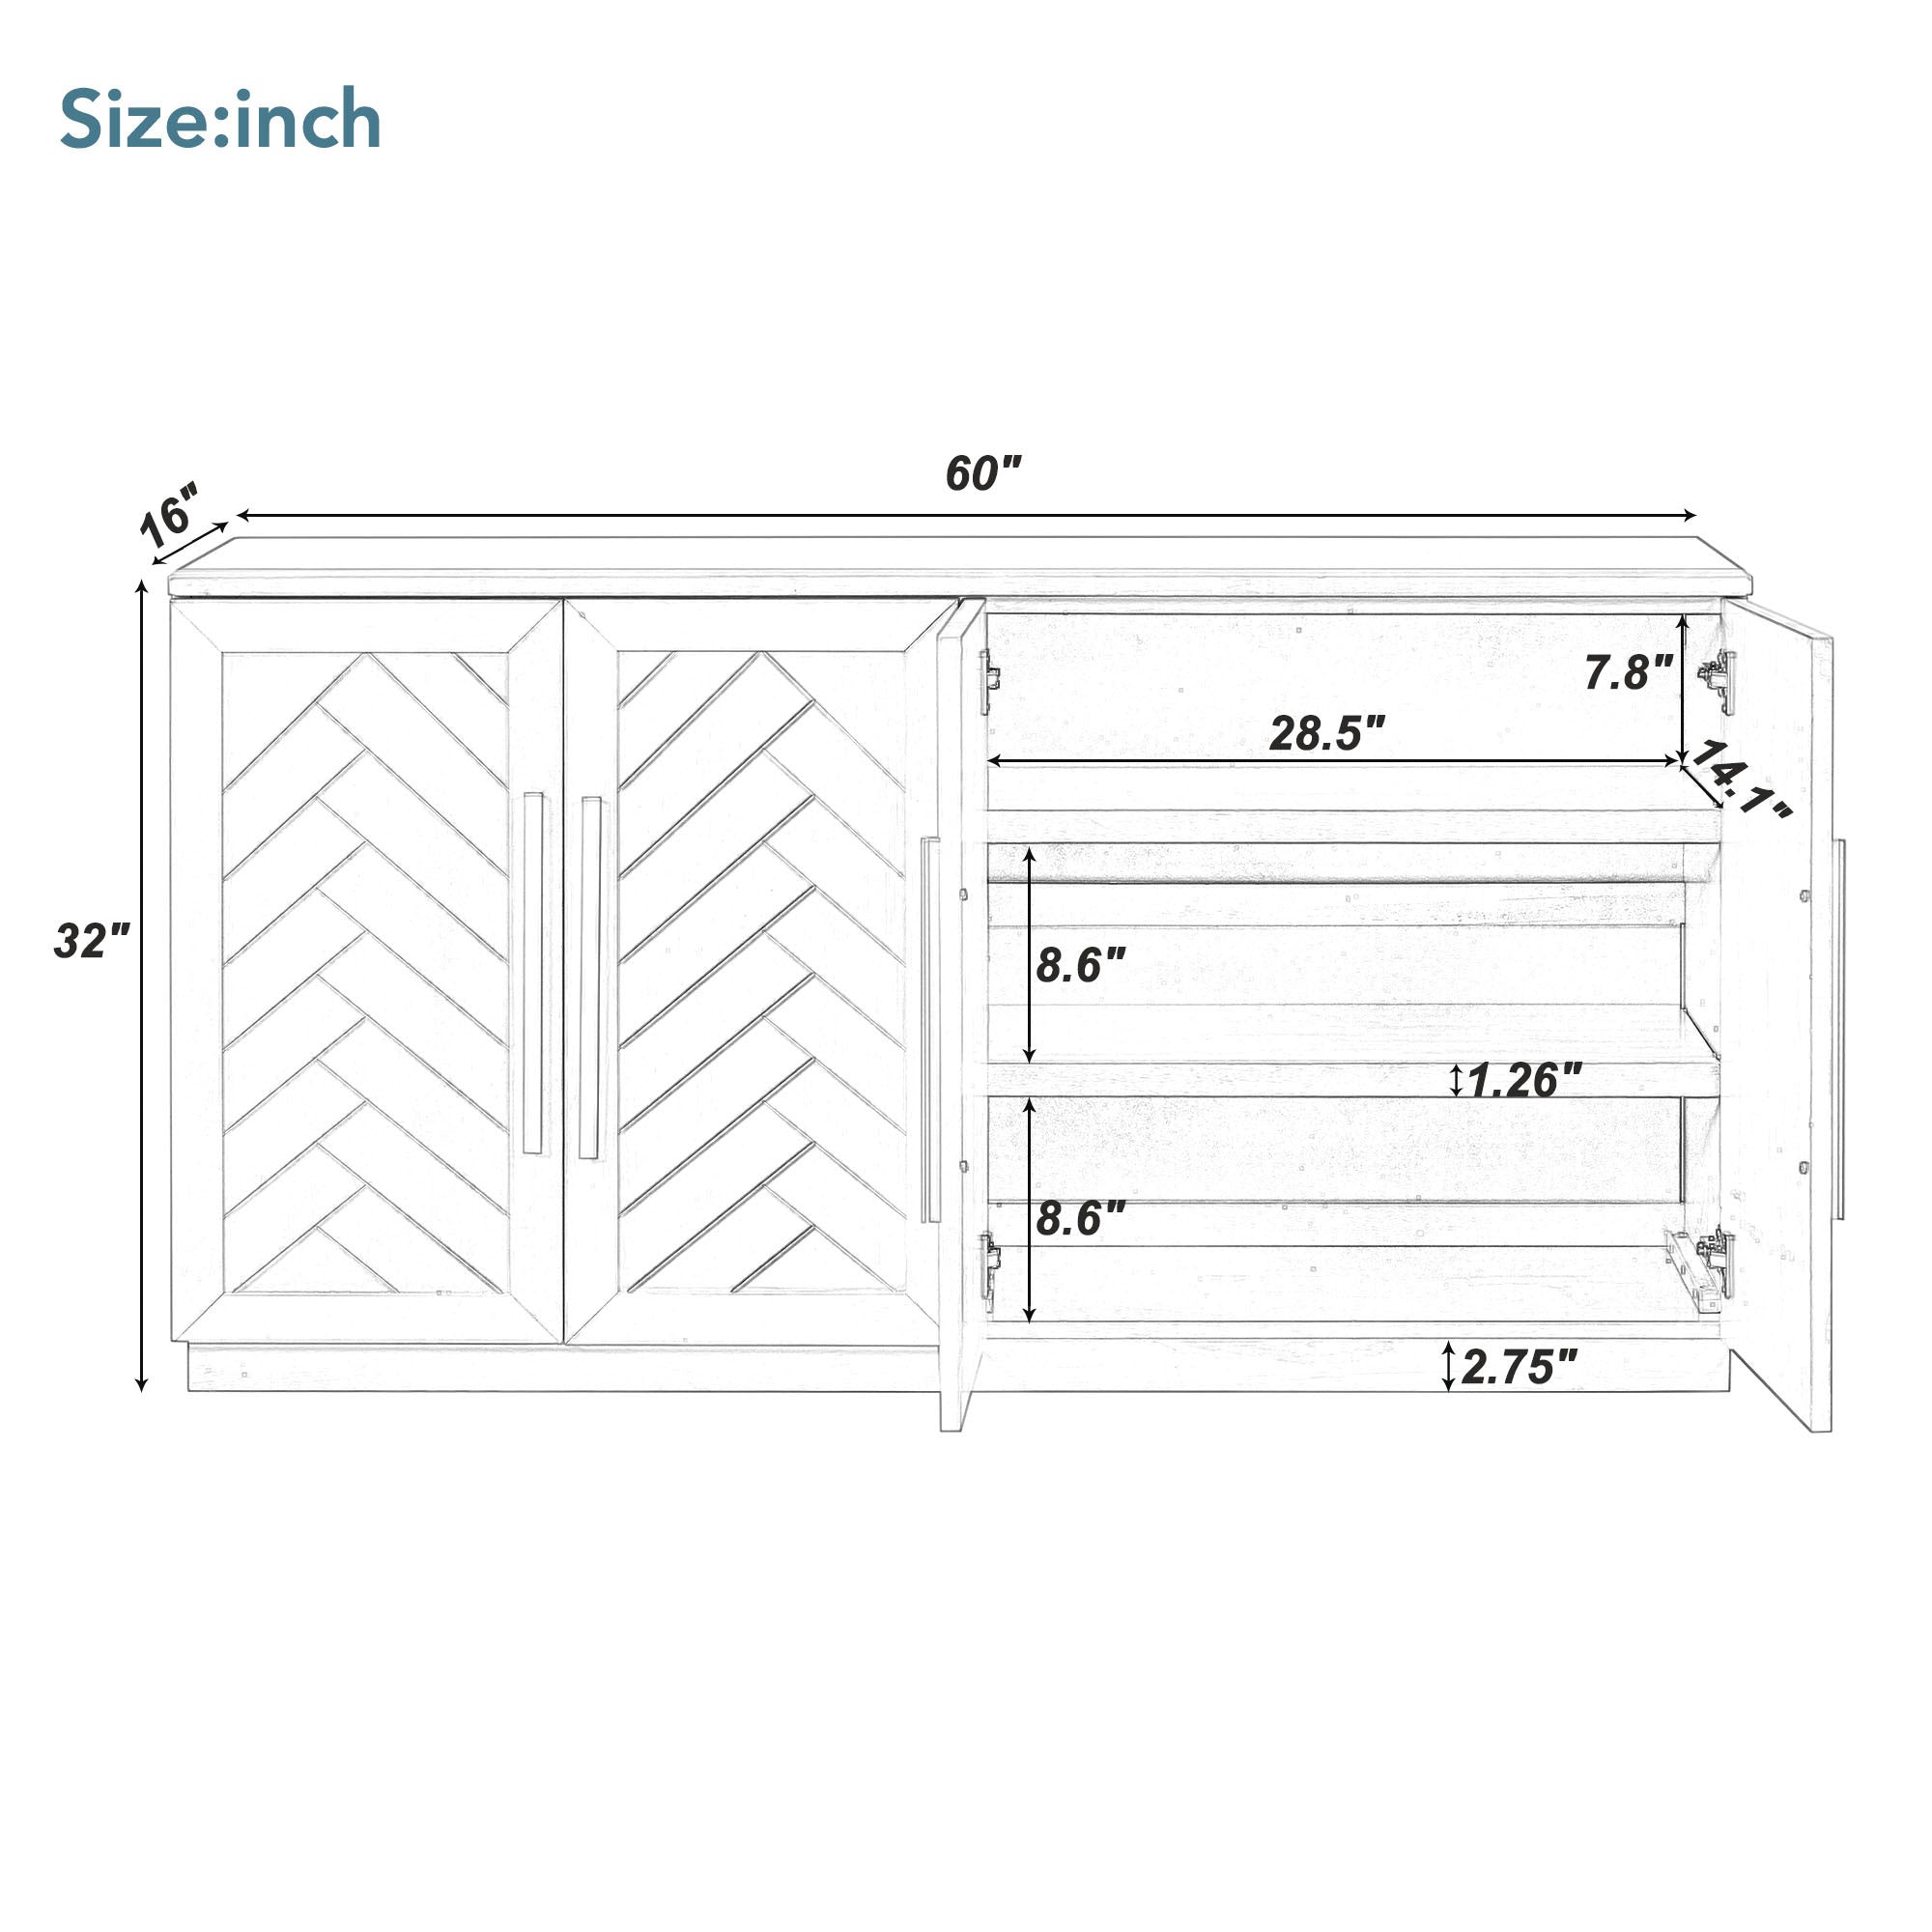 Sideboard with 4 Doors Large Storage Space black-solid wood+mdf